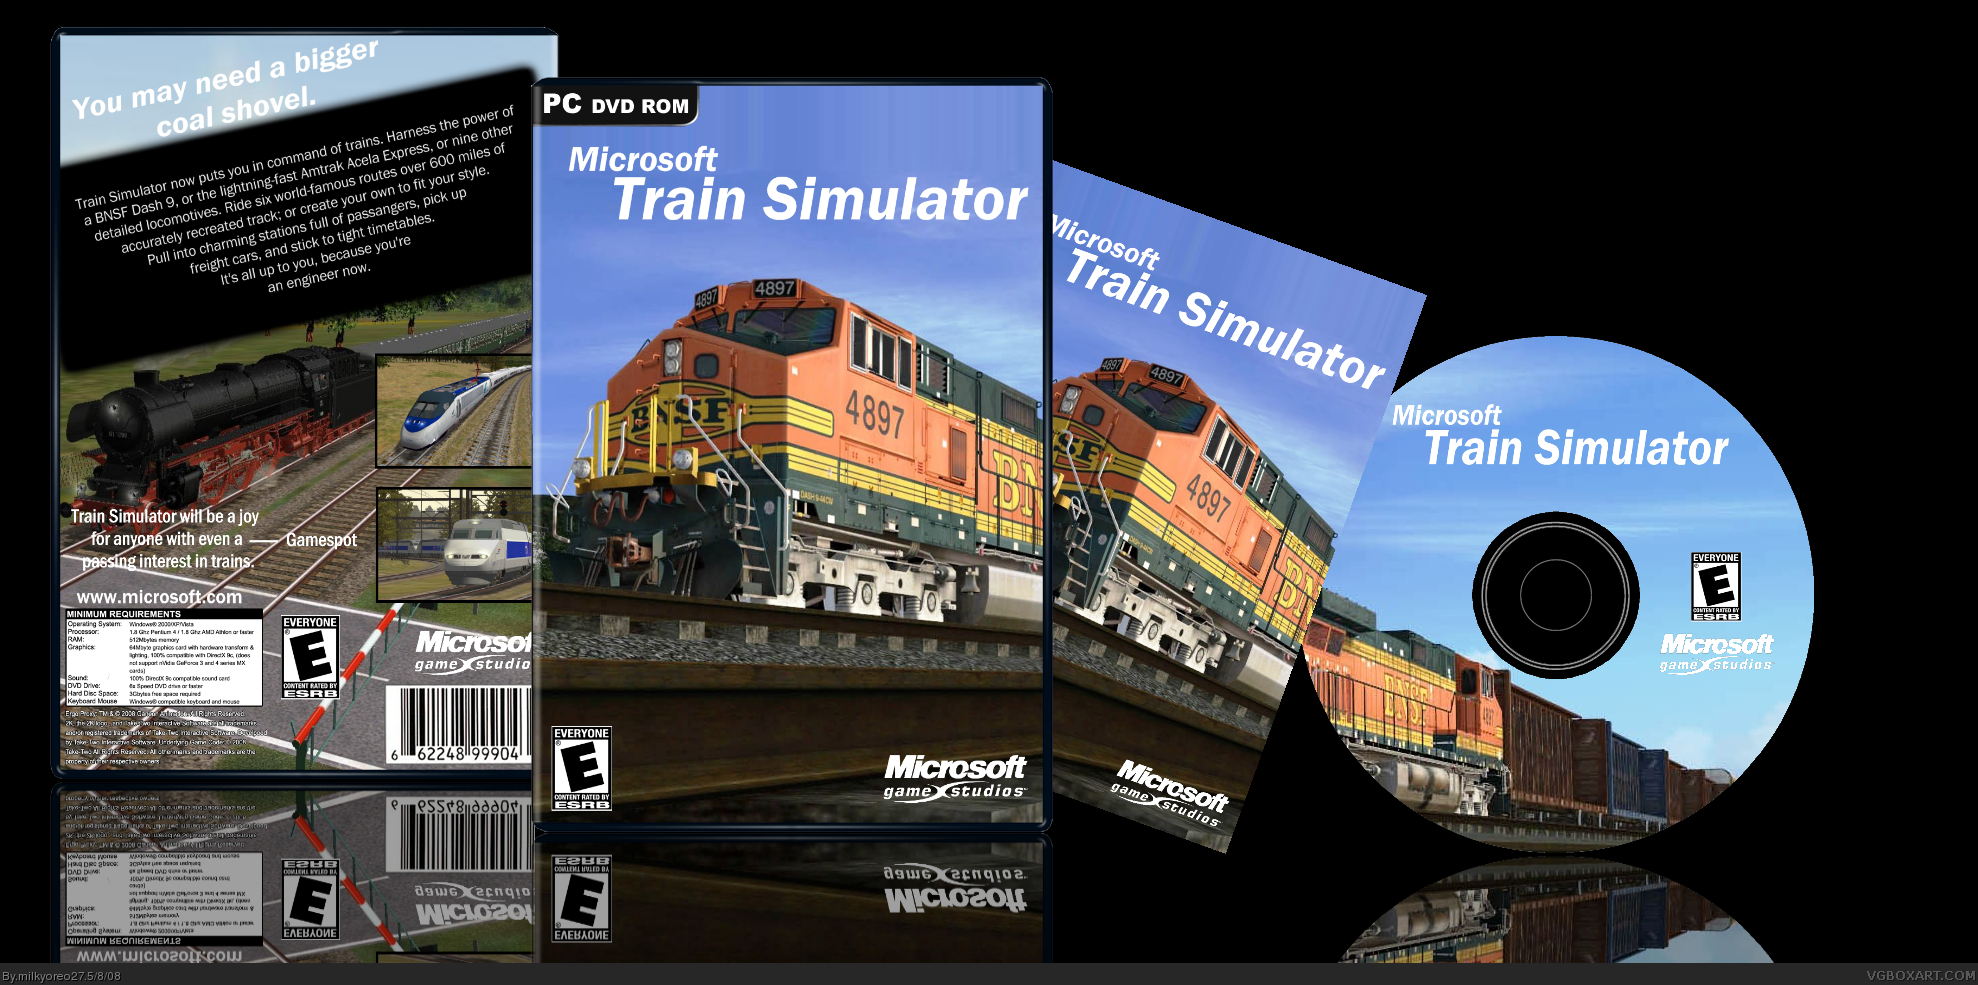 Microsoft Train Simulator box cover